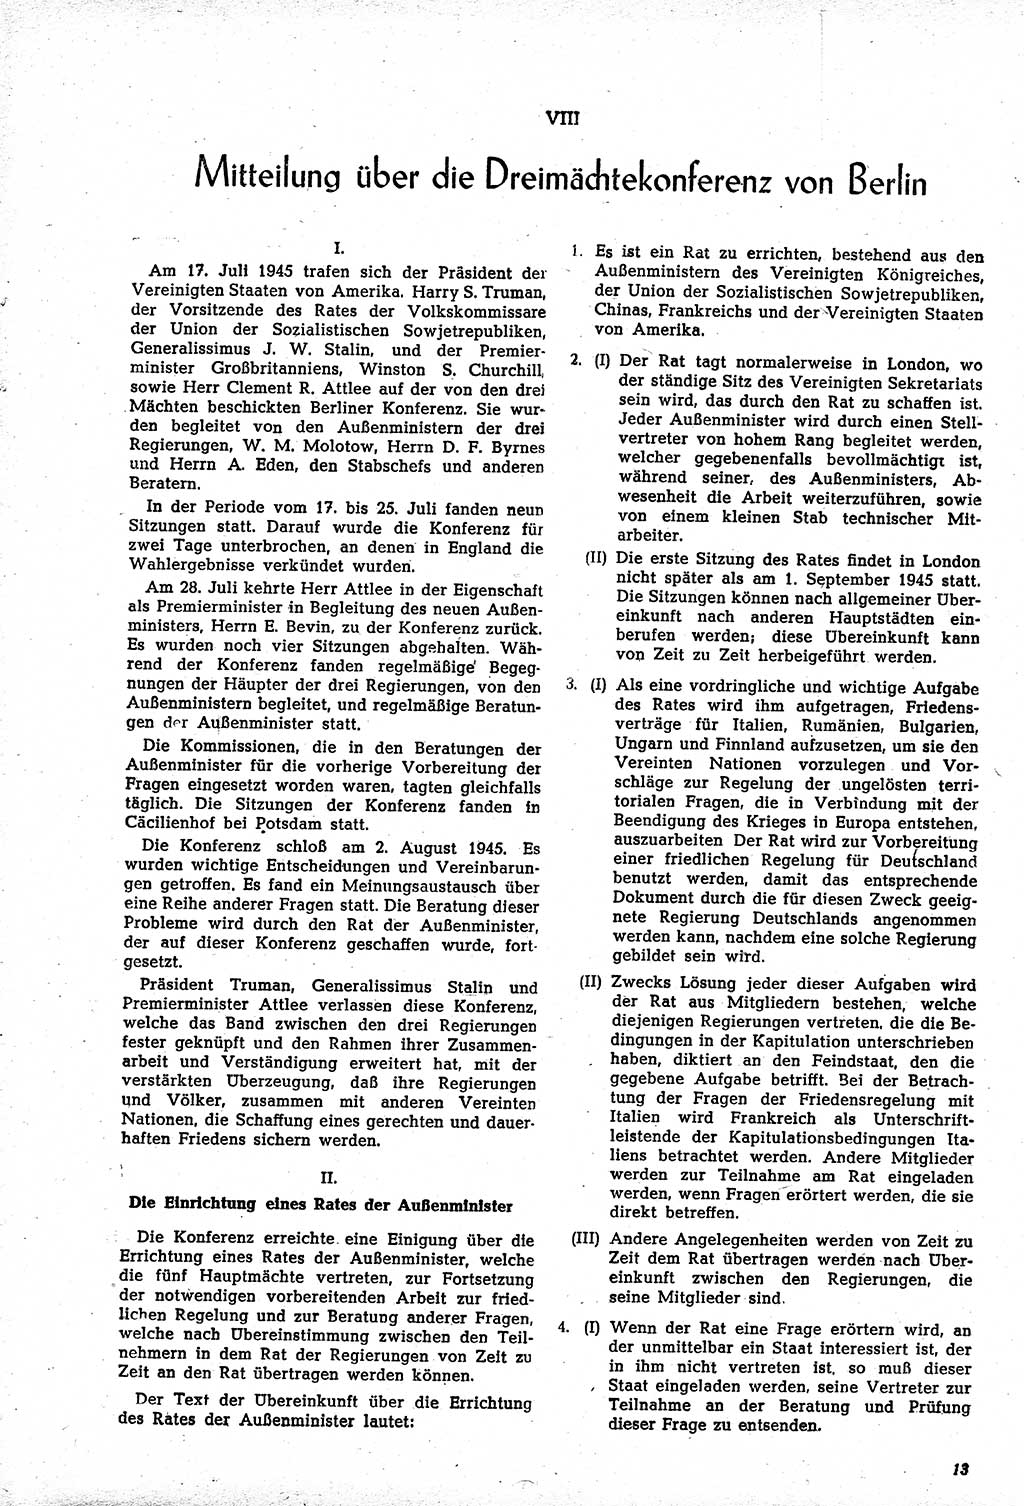 Amtsblatt des Kontrollrats (ABlKR) in Deutschland, Ergänzungsblatt Nr. 1, Sammlung von Urkunden betreffend die Errichtung der Alliierten Kontrollbehörde 1945, Seite 13 (ABlKR Dtl., Erg. Bl. 1 1945, S. 13)